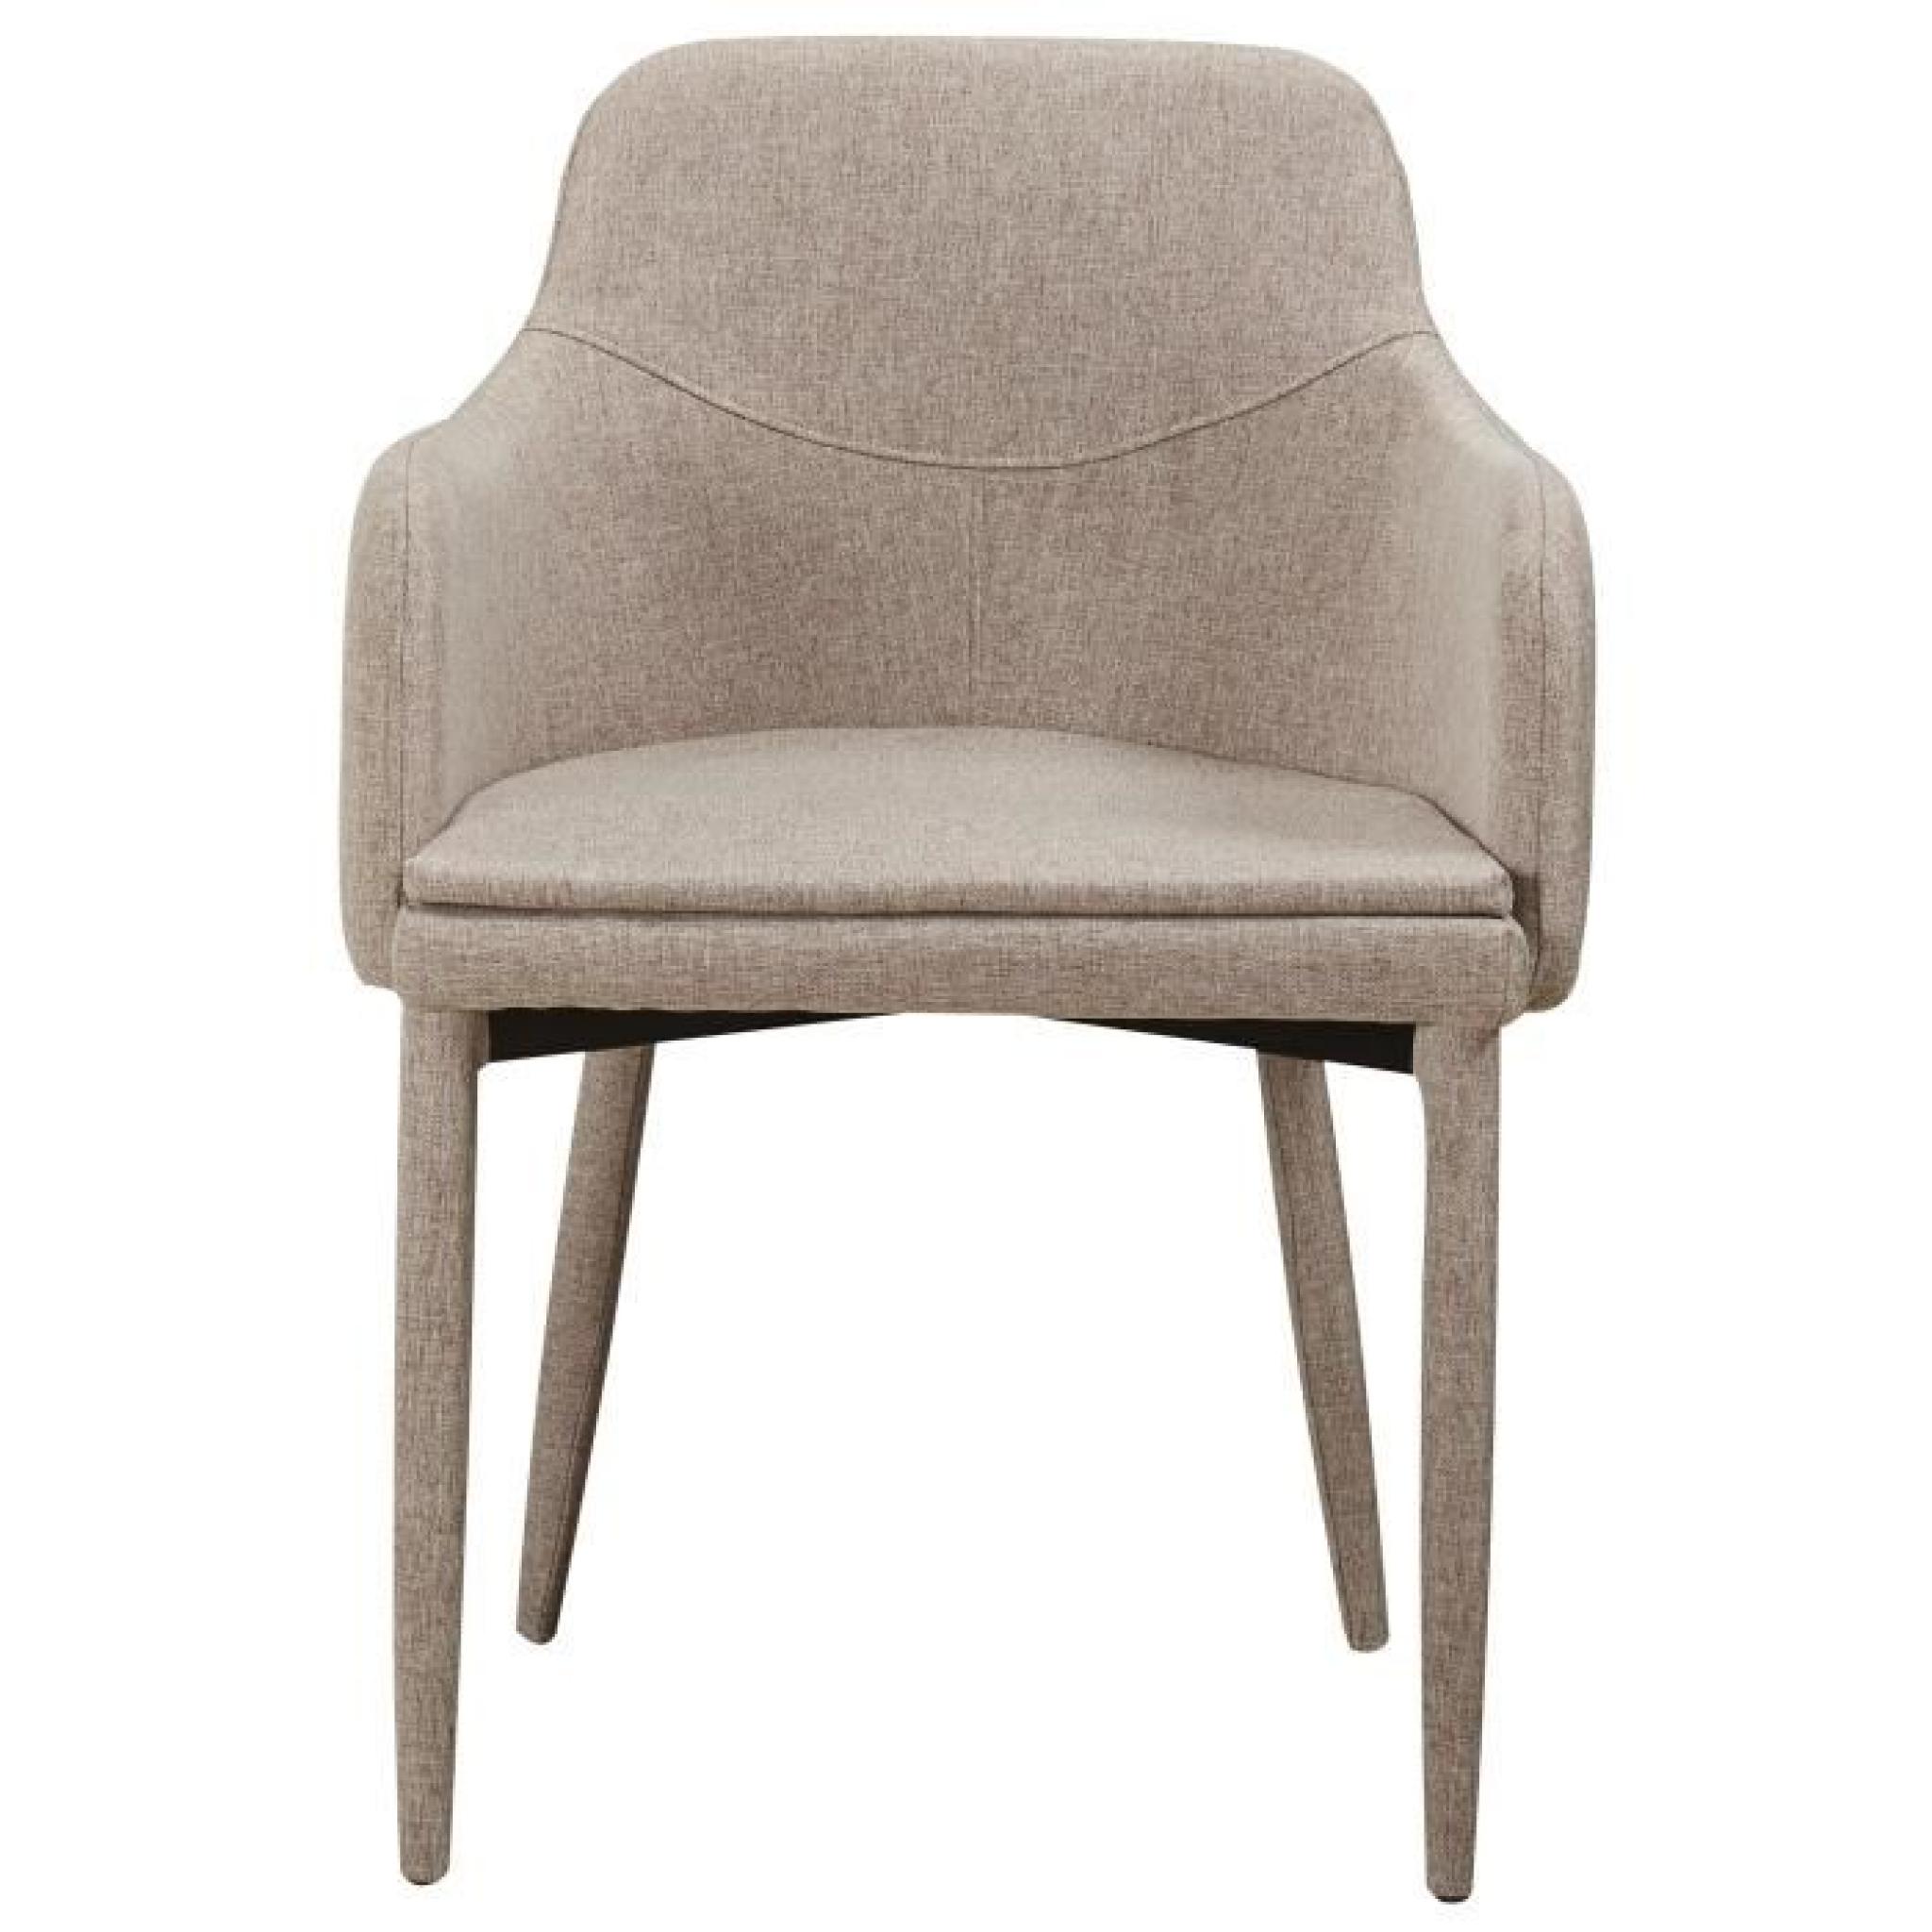 Chaise en tissus design avec accoudoirs coloris beige pas cher